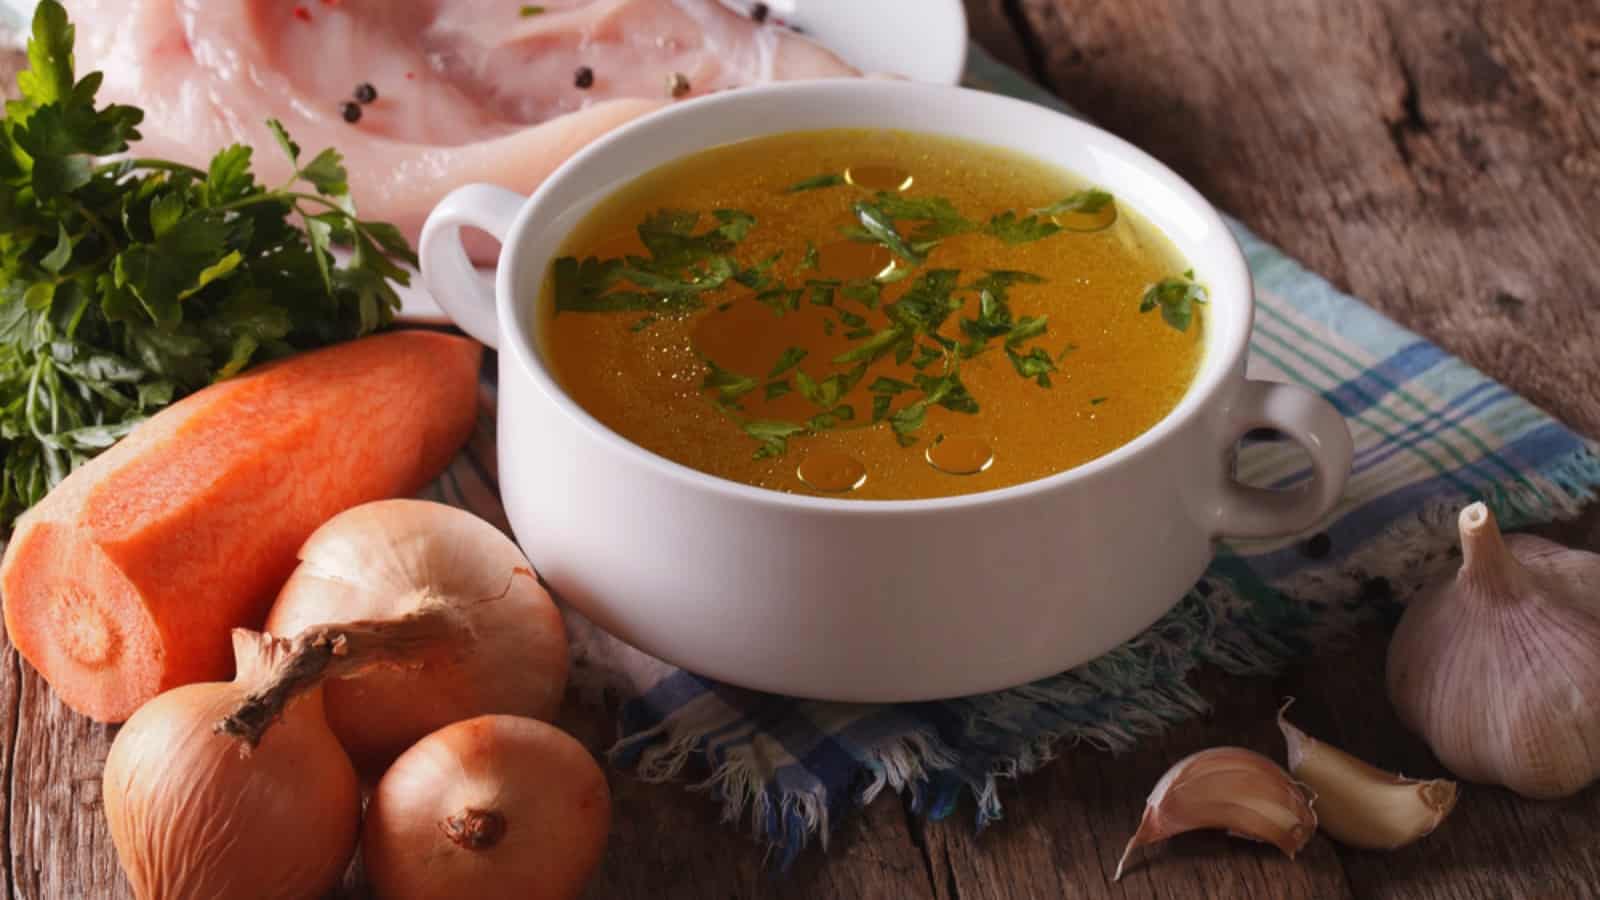 یک کاسه سوپ با هویج، پیاز و سیر روی میز چوبی.